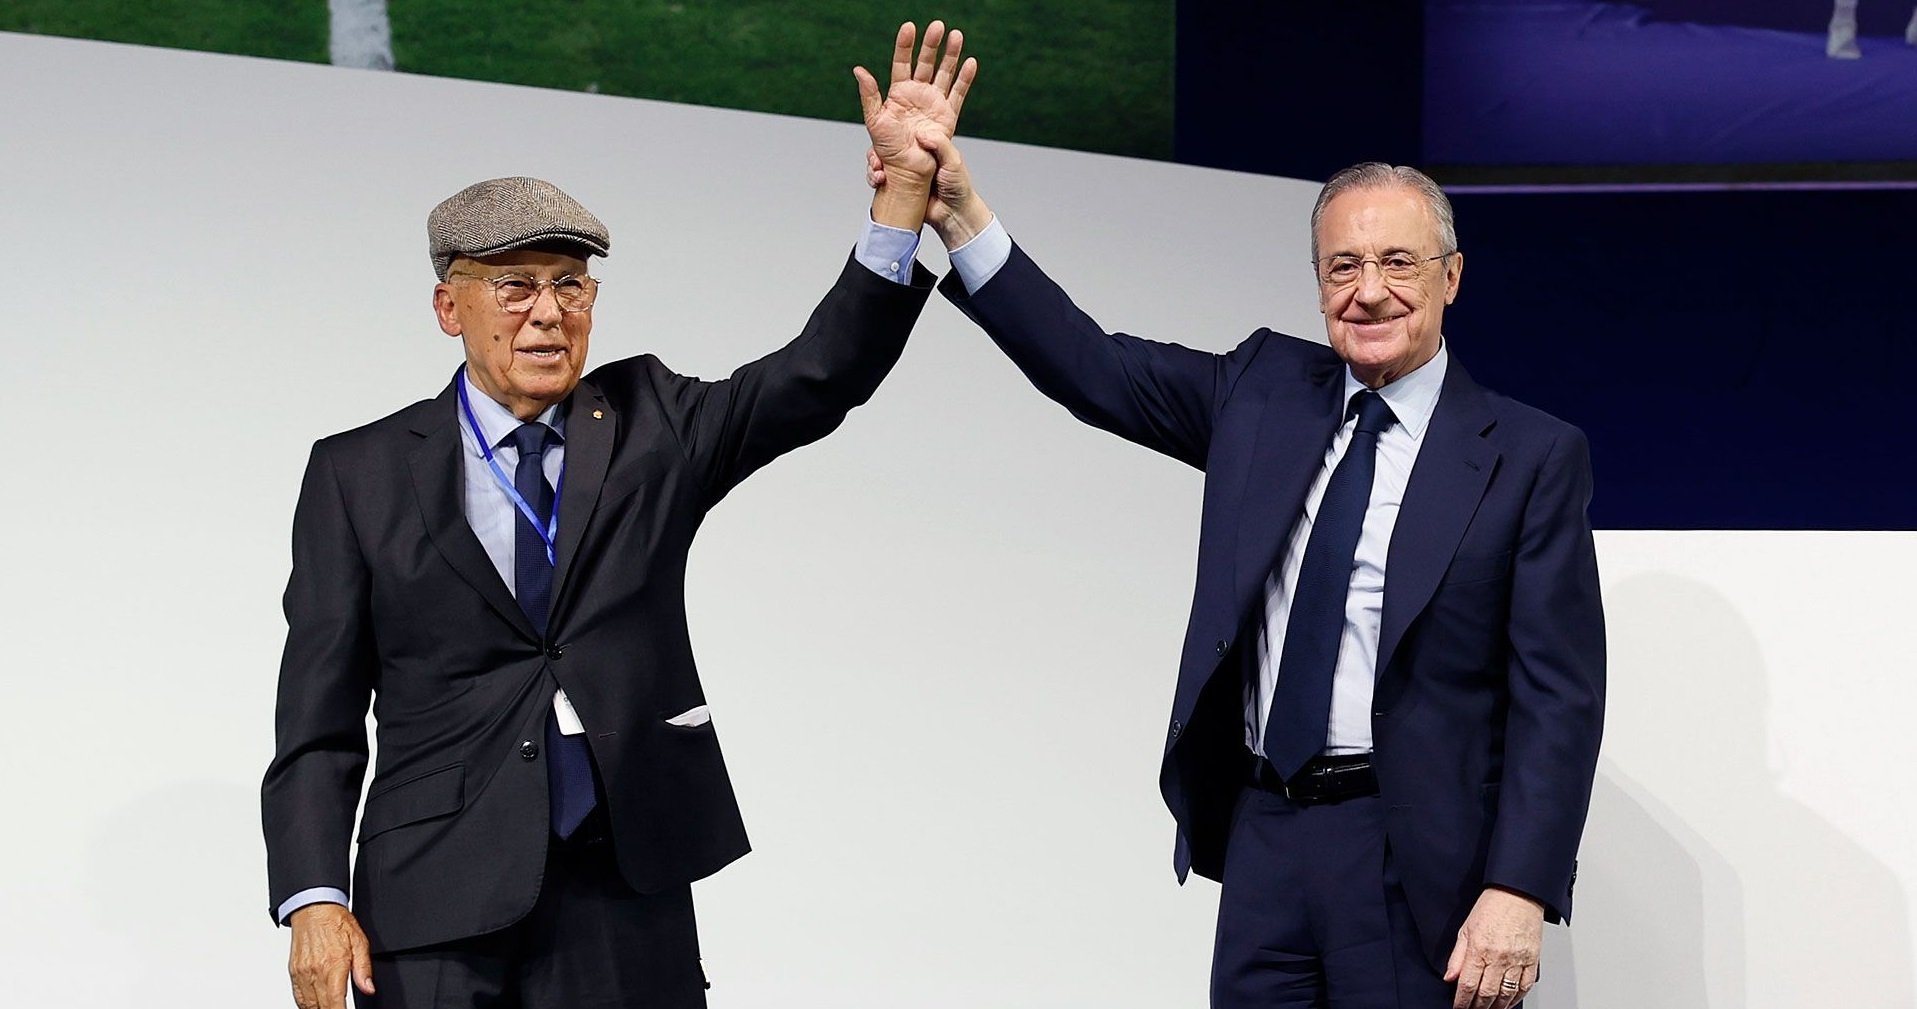 Florentino Pérez, l'estratega del mercat, fixa un objectiu de 30 milions al Mundial: suplent de Benzema